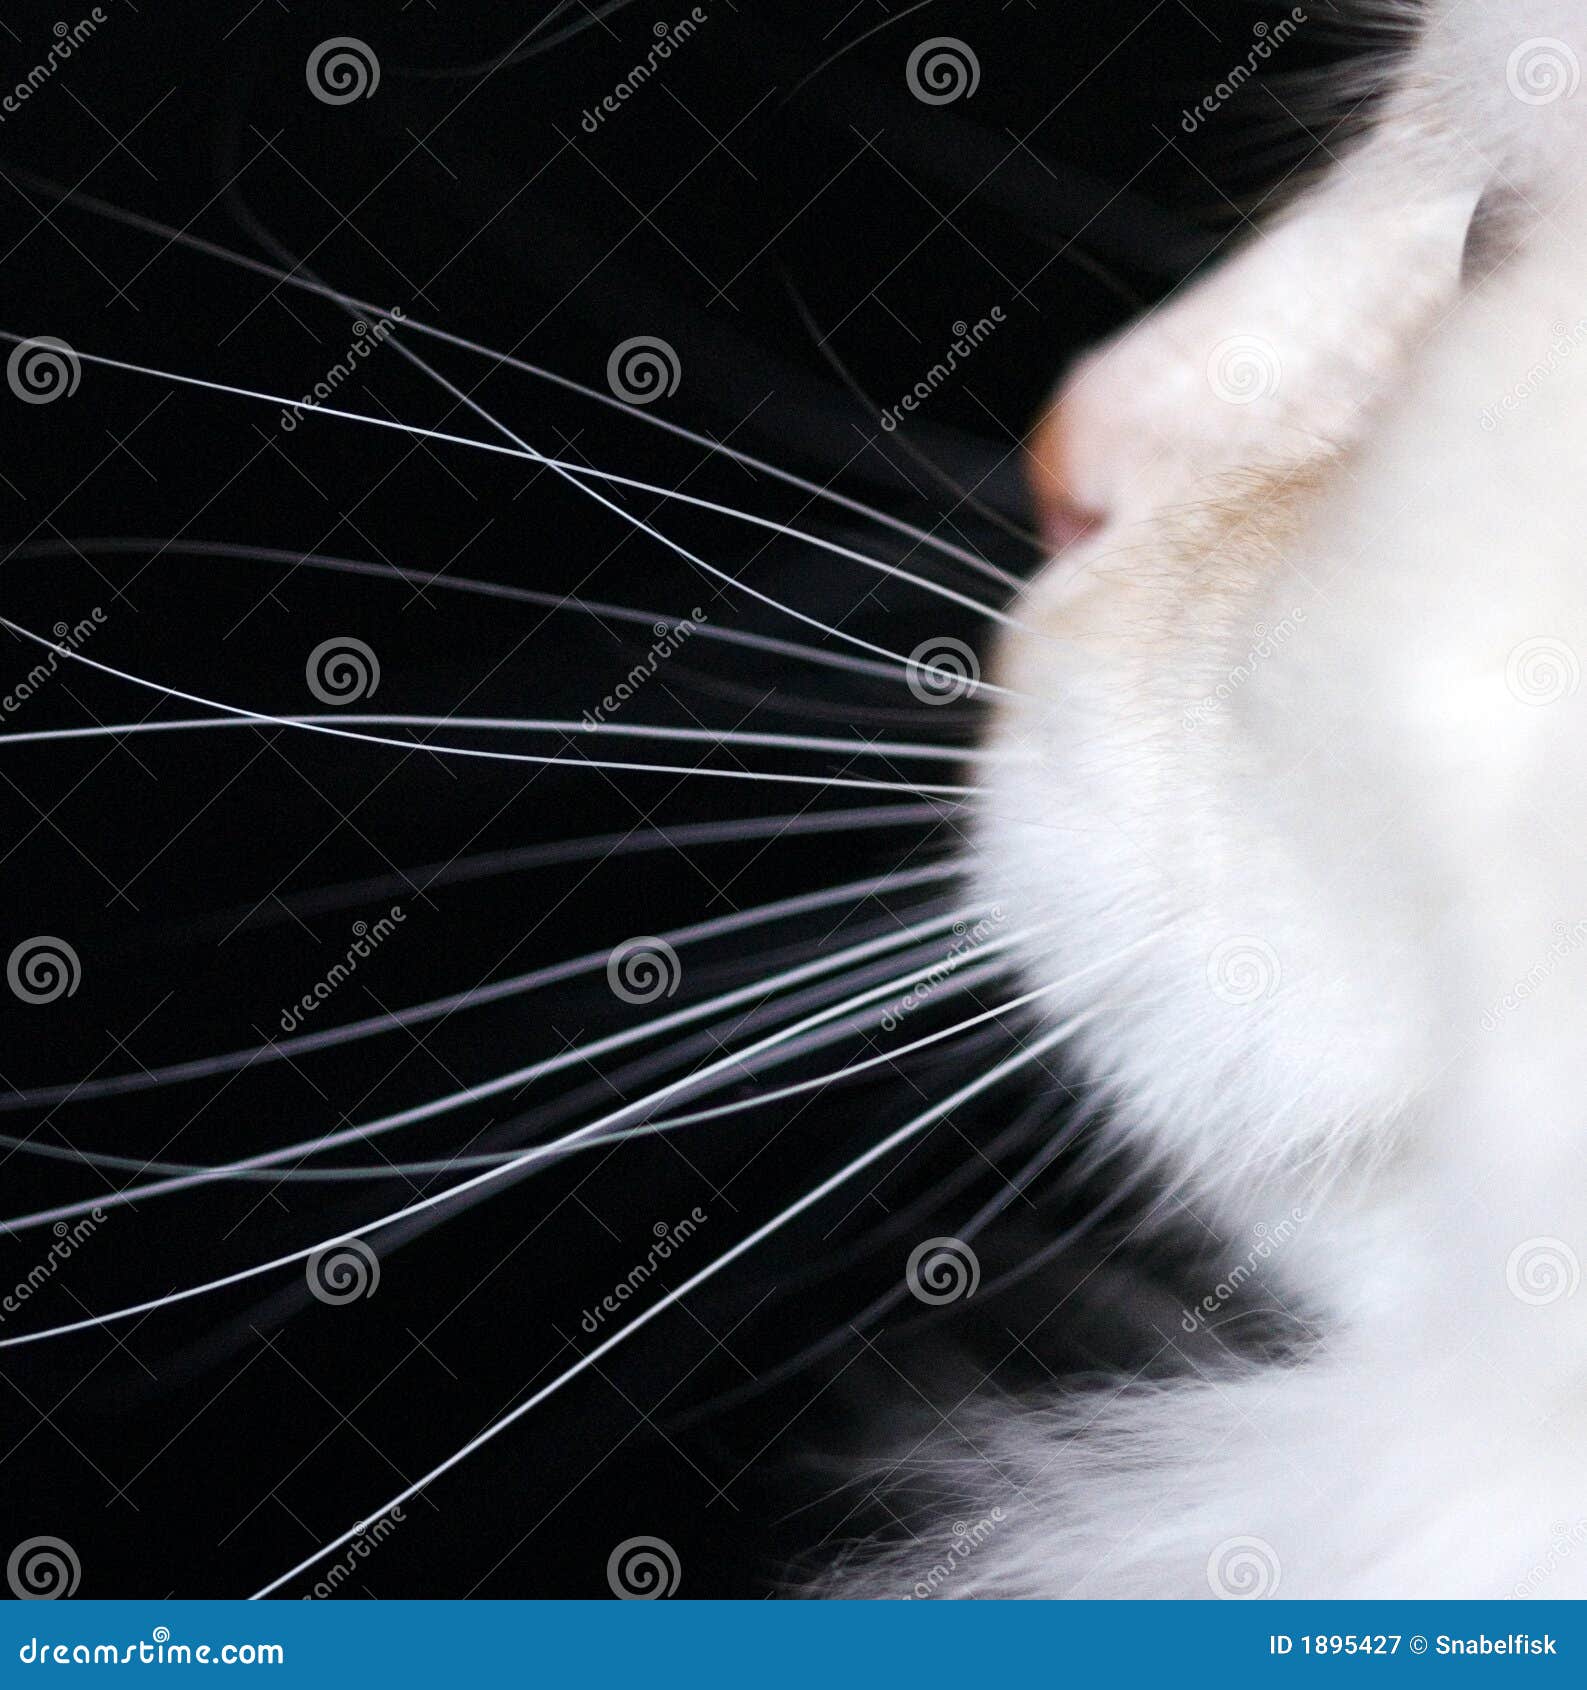  White Cat Whiskers  stock image Image of black kitten  